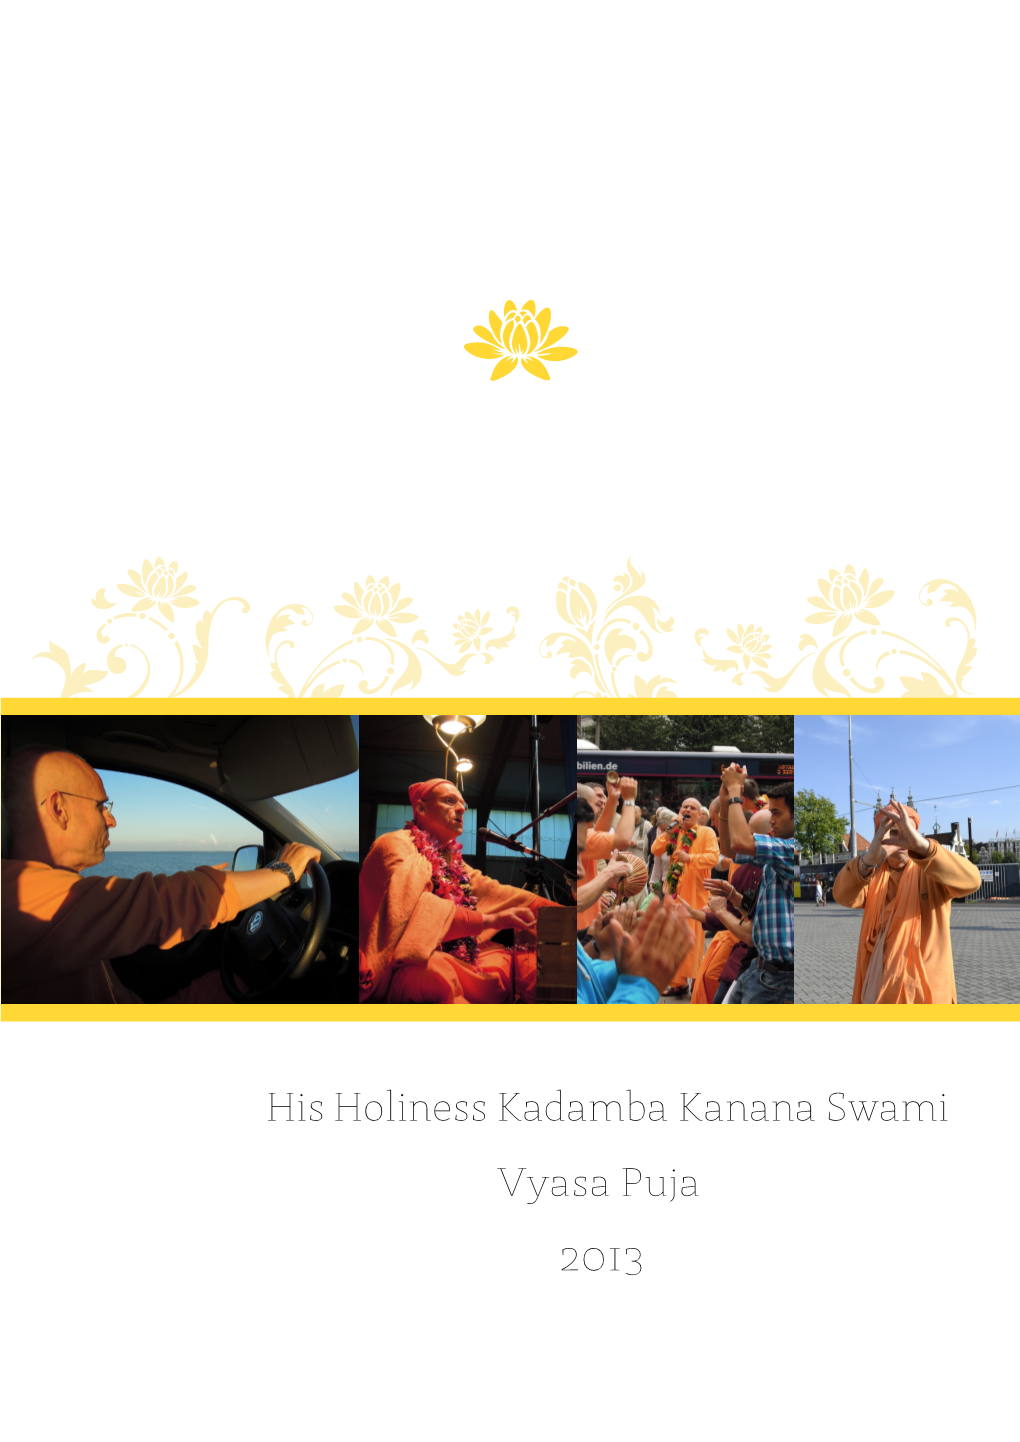 Vyasa Puja His Holiness Kadamba Kanana Swami 2013